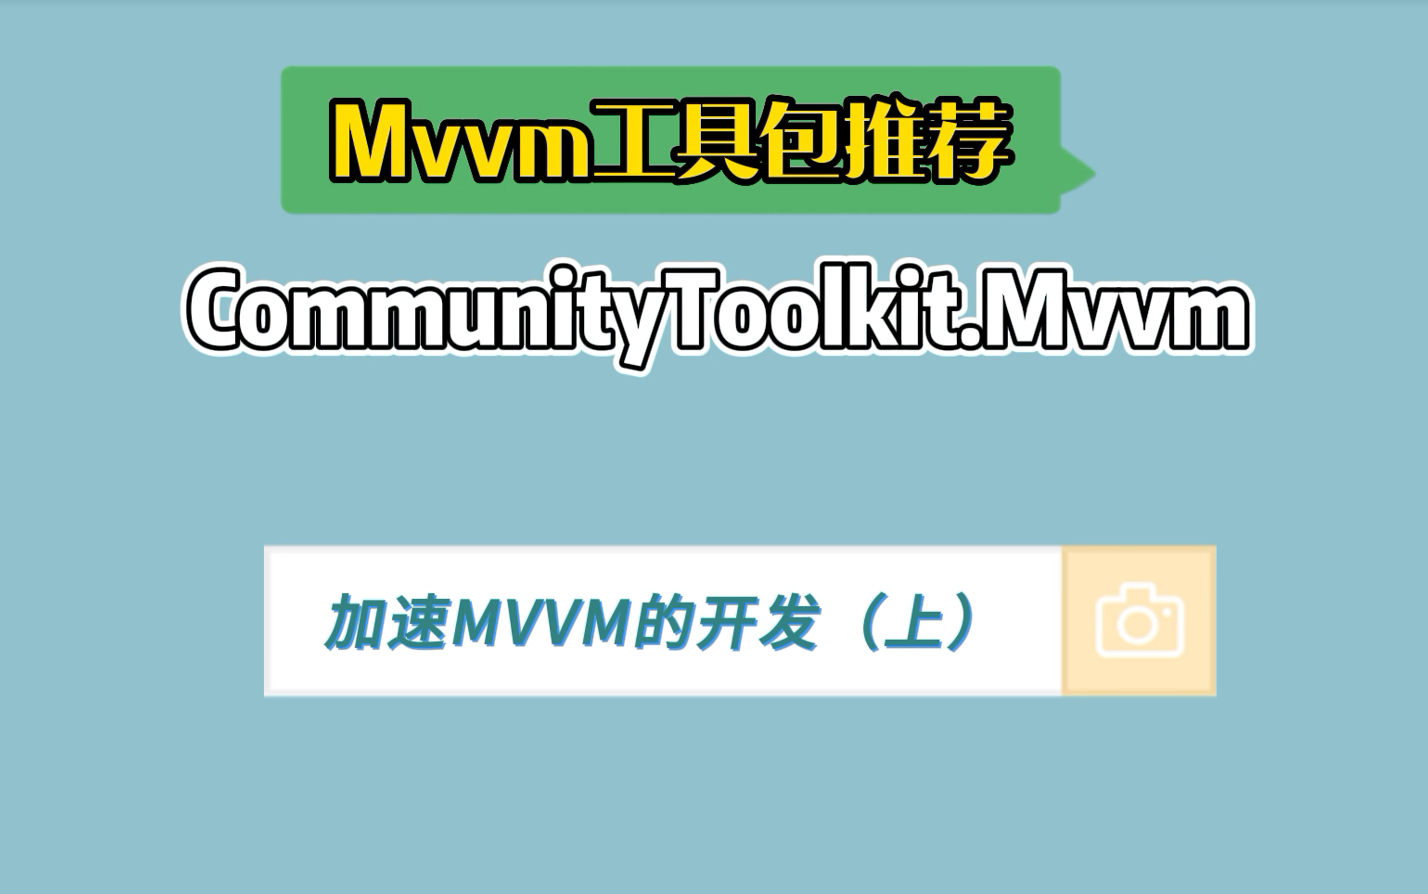 02-用 MvvmToolkit 加速 MVVM 开发流程（上）